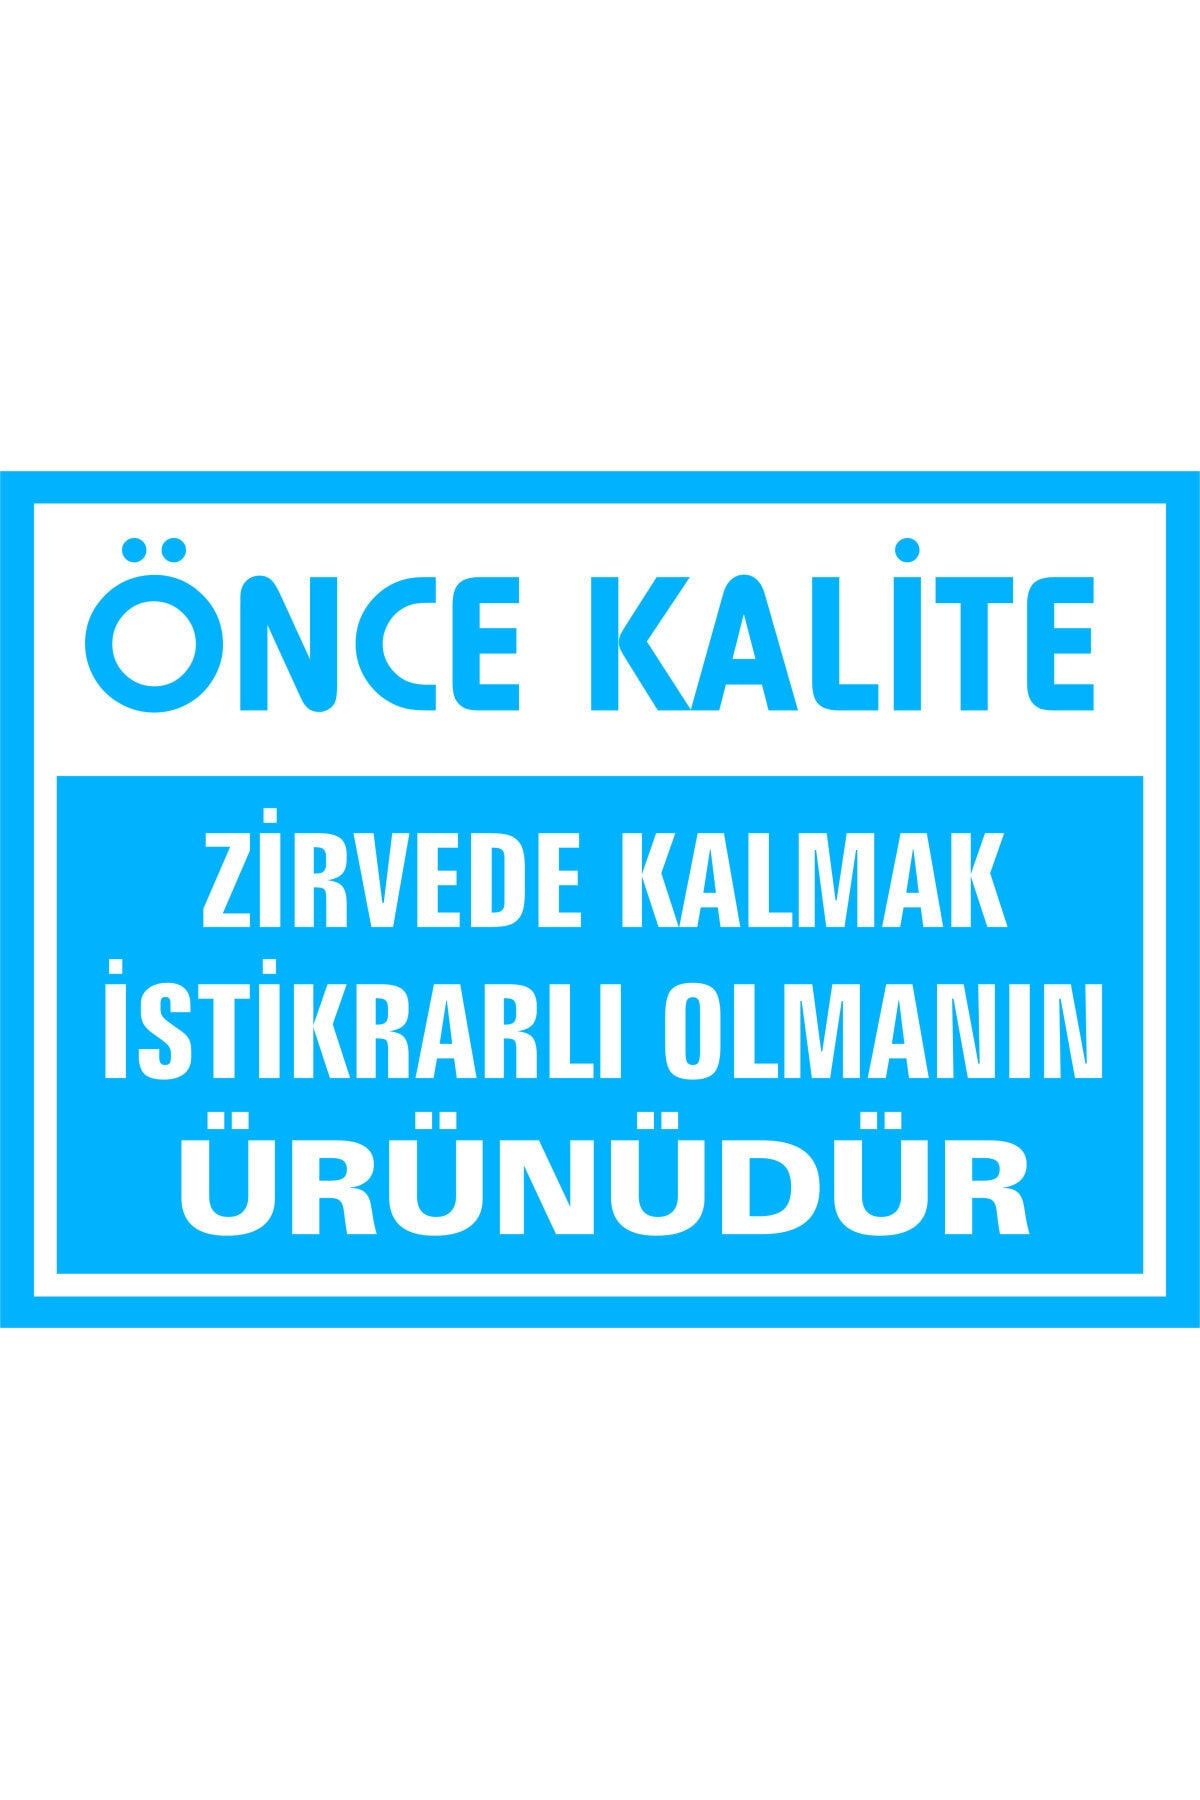 İzmir Serigrafi Önce Kalite Zirvede Kalmak Istikrarlı Olmanın Ürünüdür Galvaniz Uyarı Levhası 25 X 35 Cm